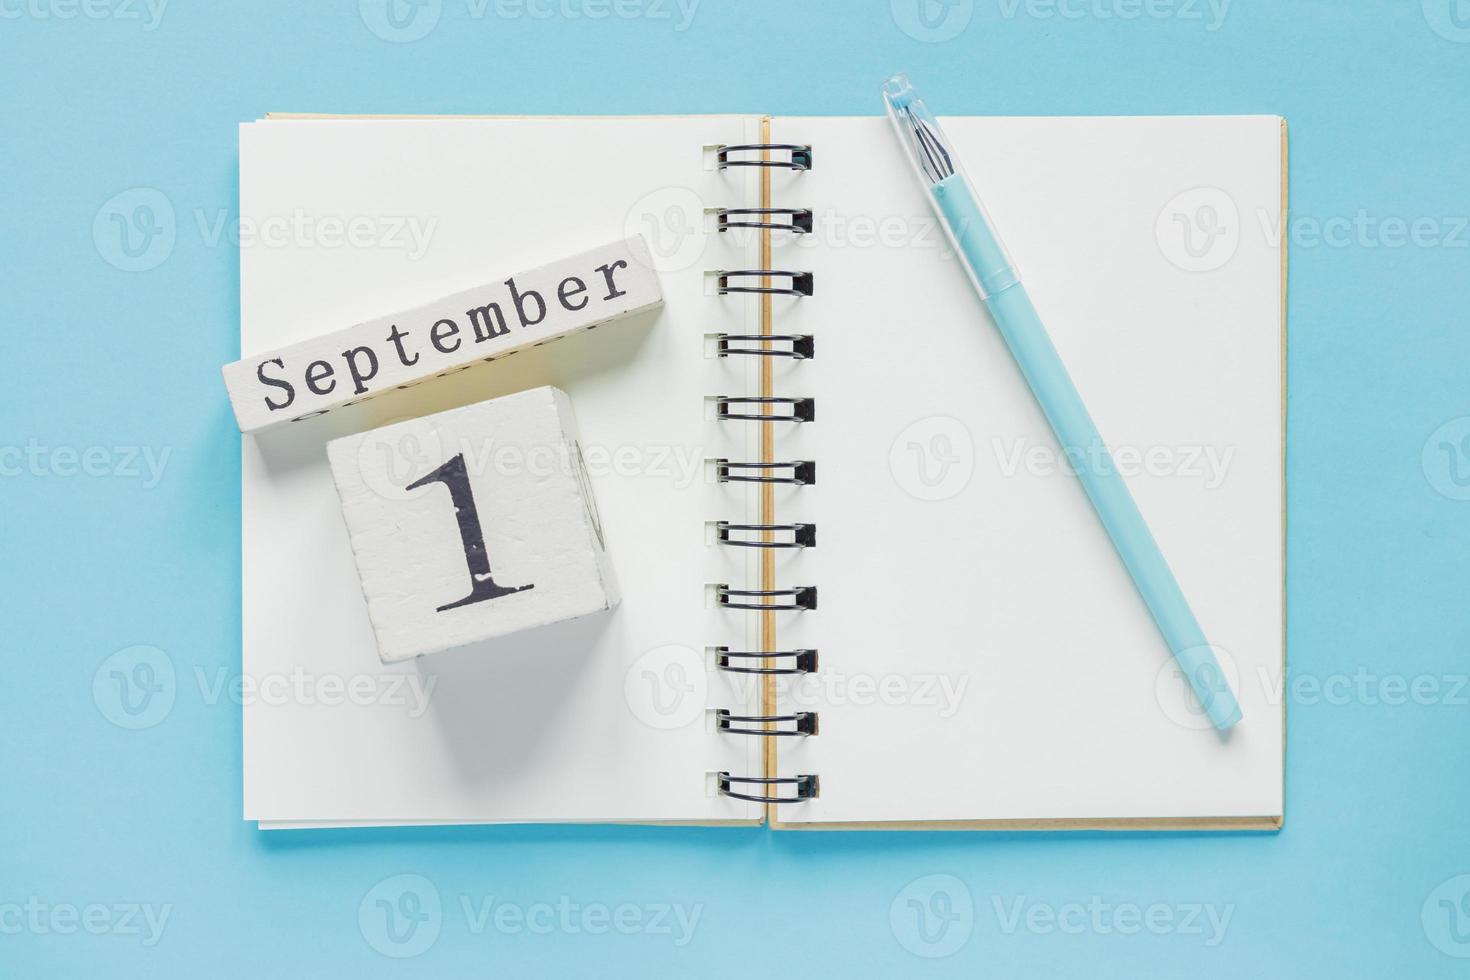 1. september auf einem holzkalender zum studienlehrbuch auf blauem hintergrund. zurück zum schulkonzept foto